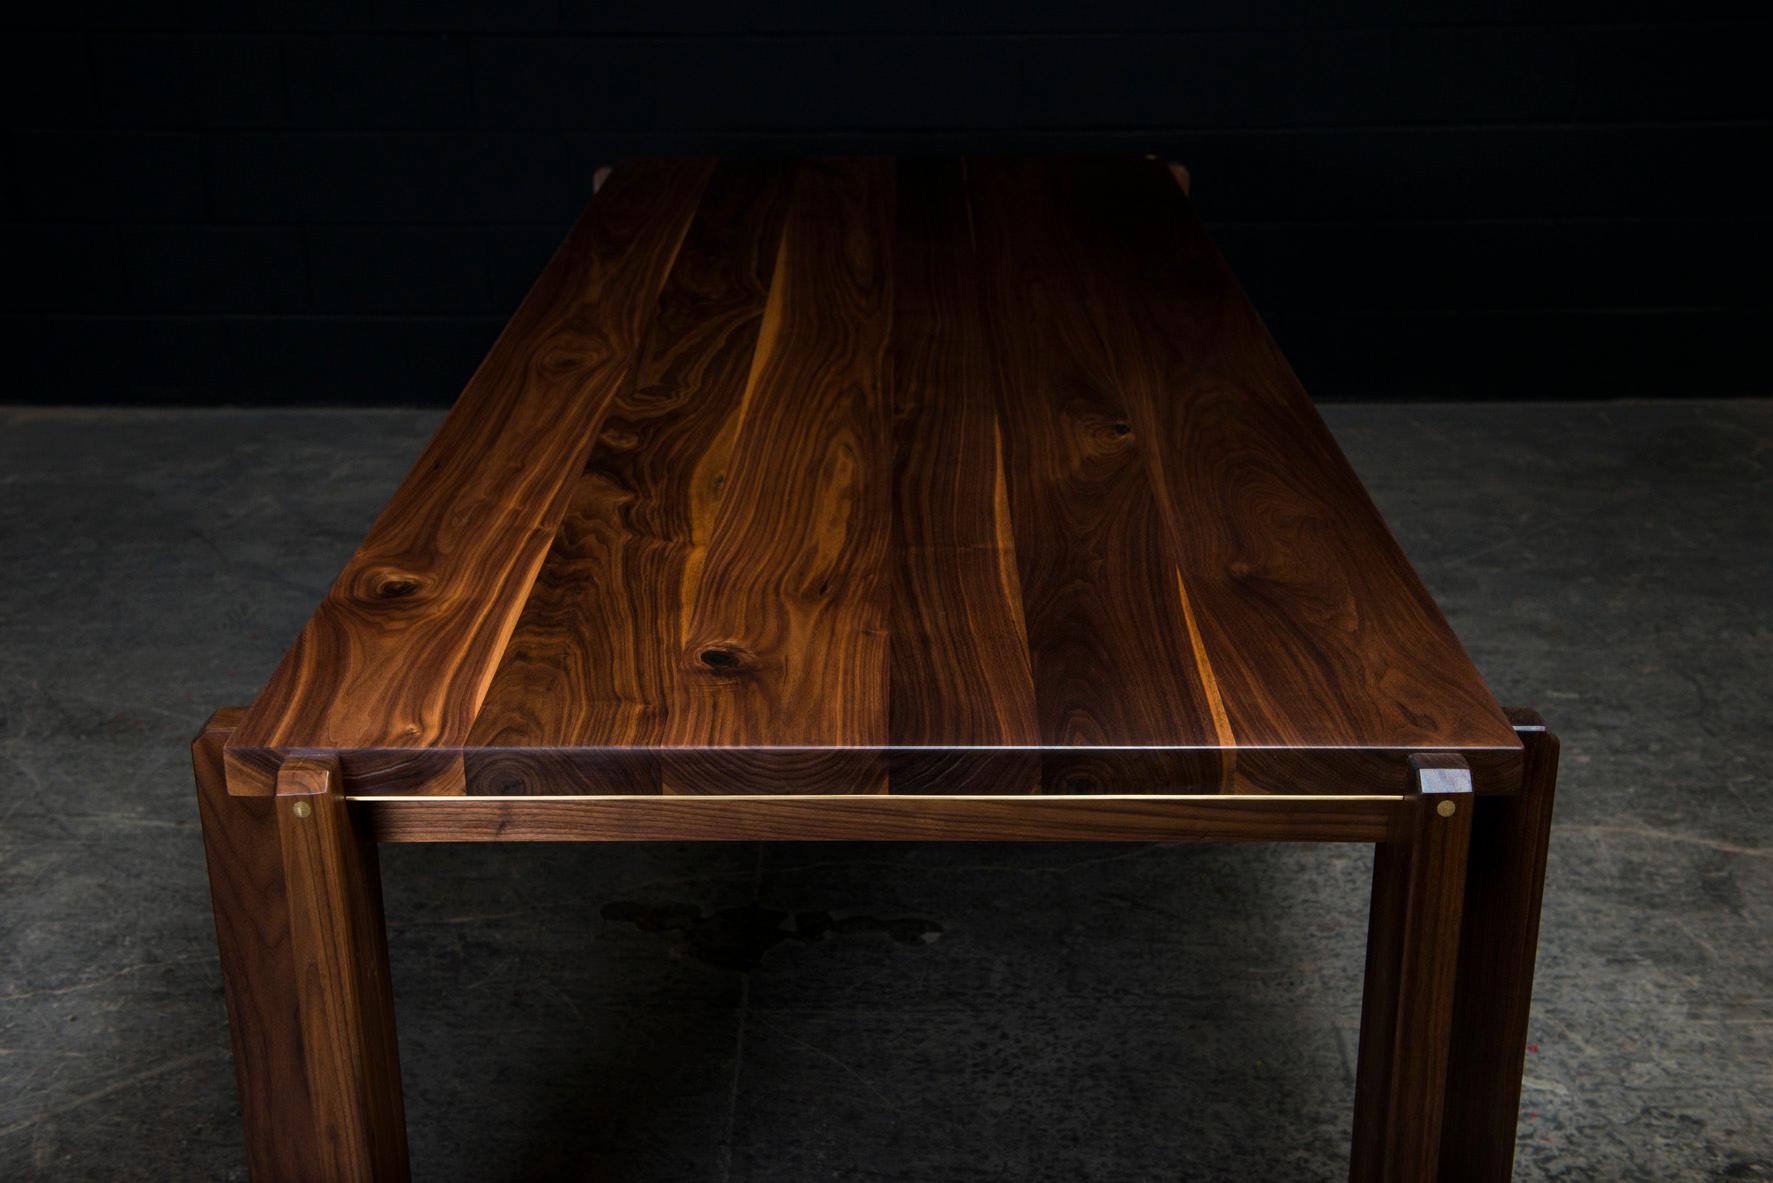 Der Castelgar ist ein eleganter, zeitgenössischer Esstisch, der auf Bestellung aus massivem, handverlesenem amerikanischem Hartholz handgefertigt wird und mit subtilen, handpolierten Messingeinlagen versehen ist. Die Säulen aus Massivholz und